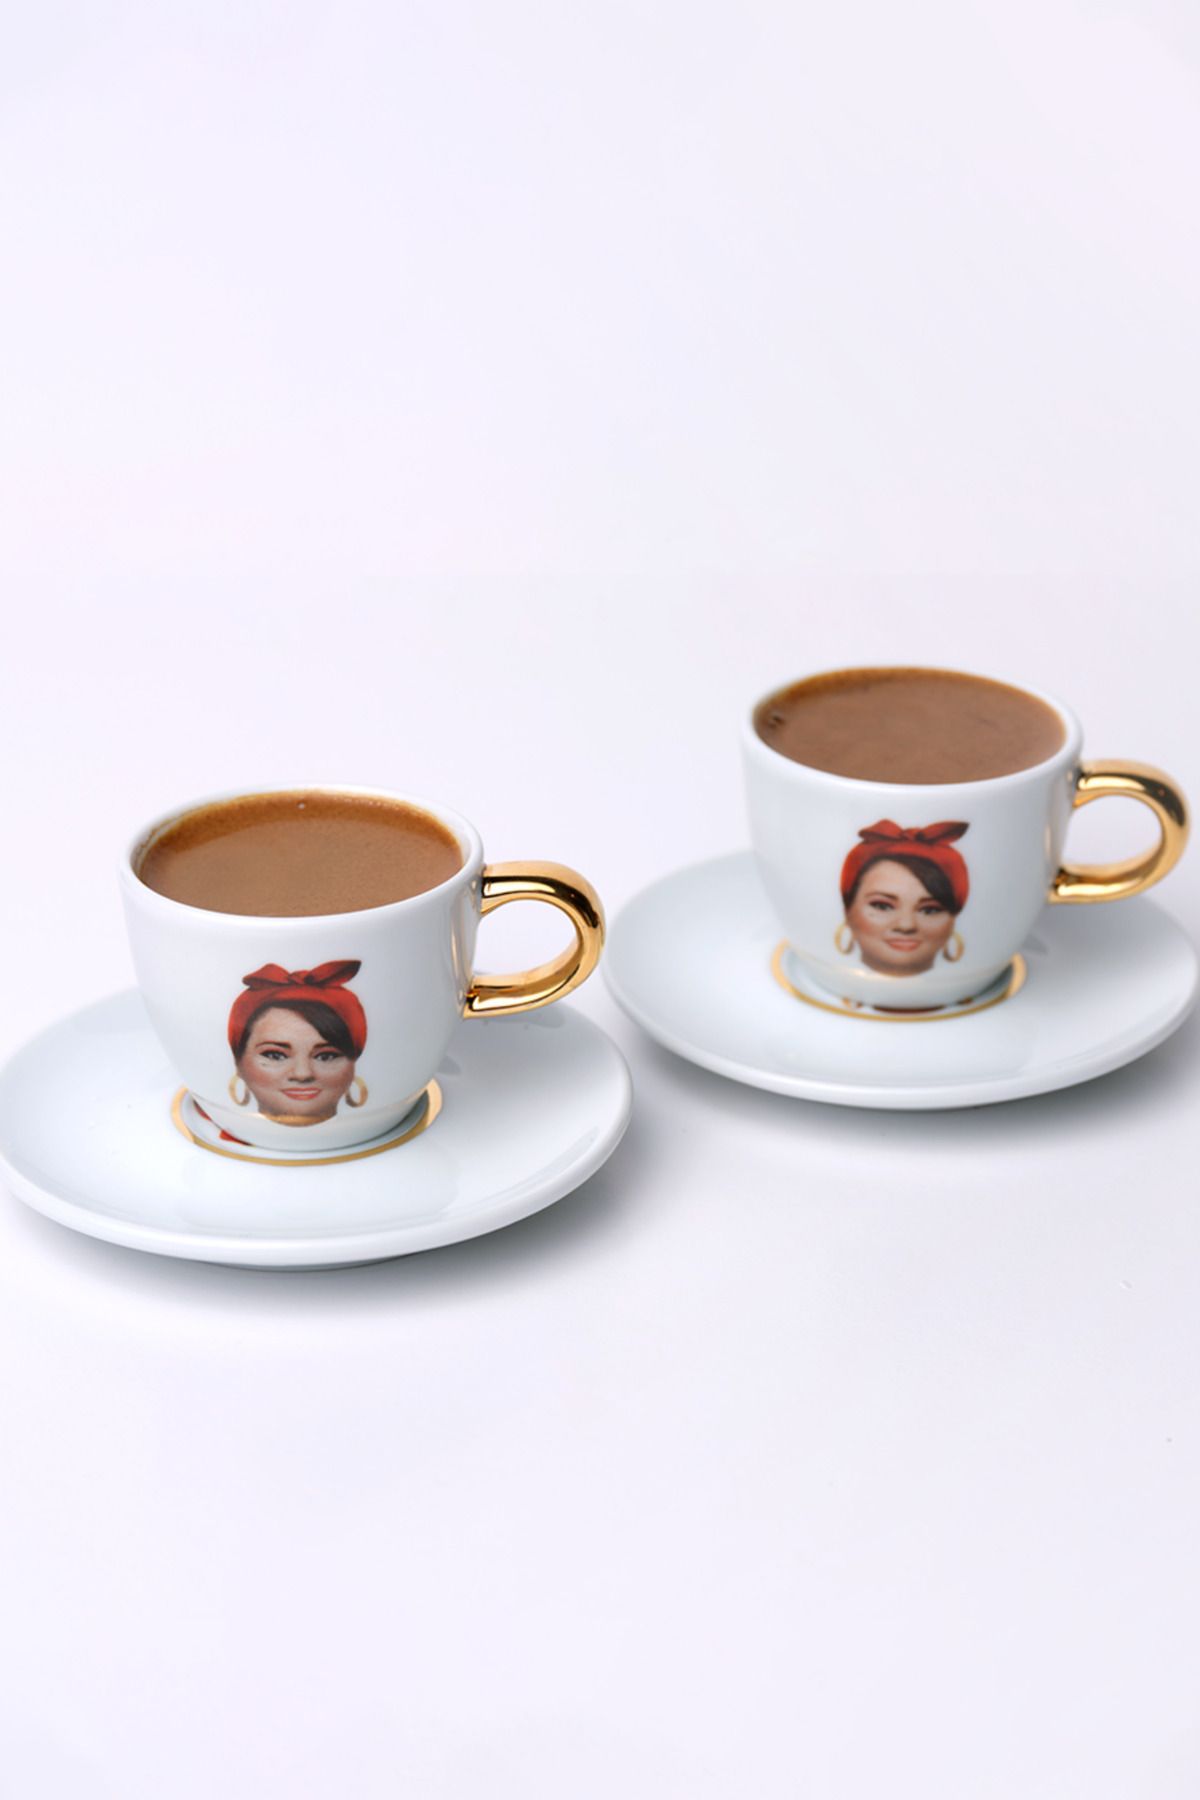 Kaave Falcı Bacı 2 Kişilik Porselen Türk Kahvesi Fincan Takımı 70 Cc - 70 ml - Yeni Tasarım